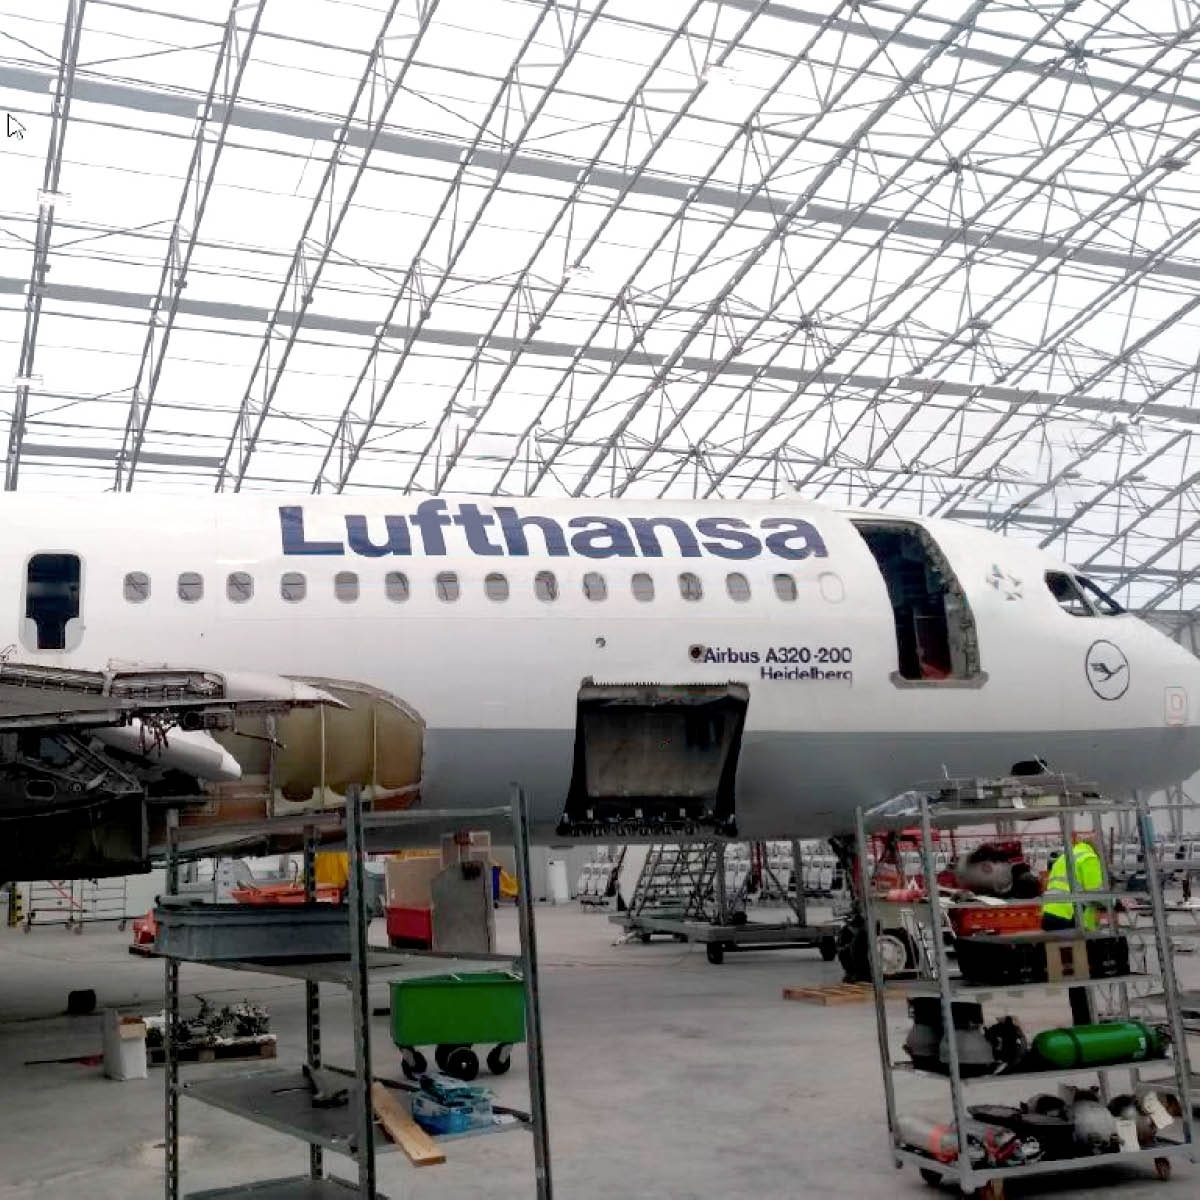 Aviationtag Lufthansa - Airbus A320 - D-AIPB Blue